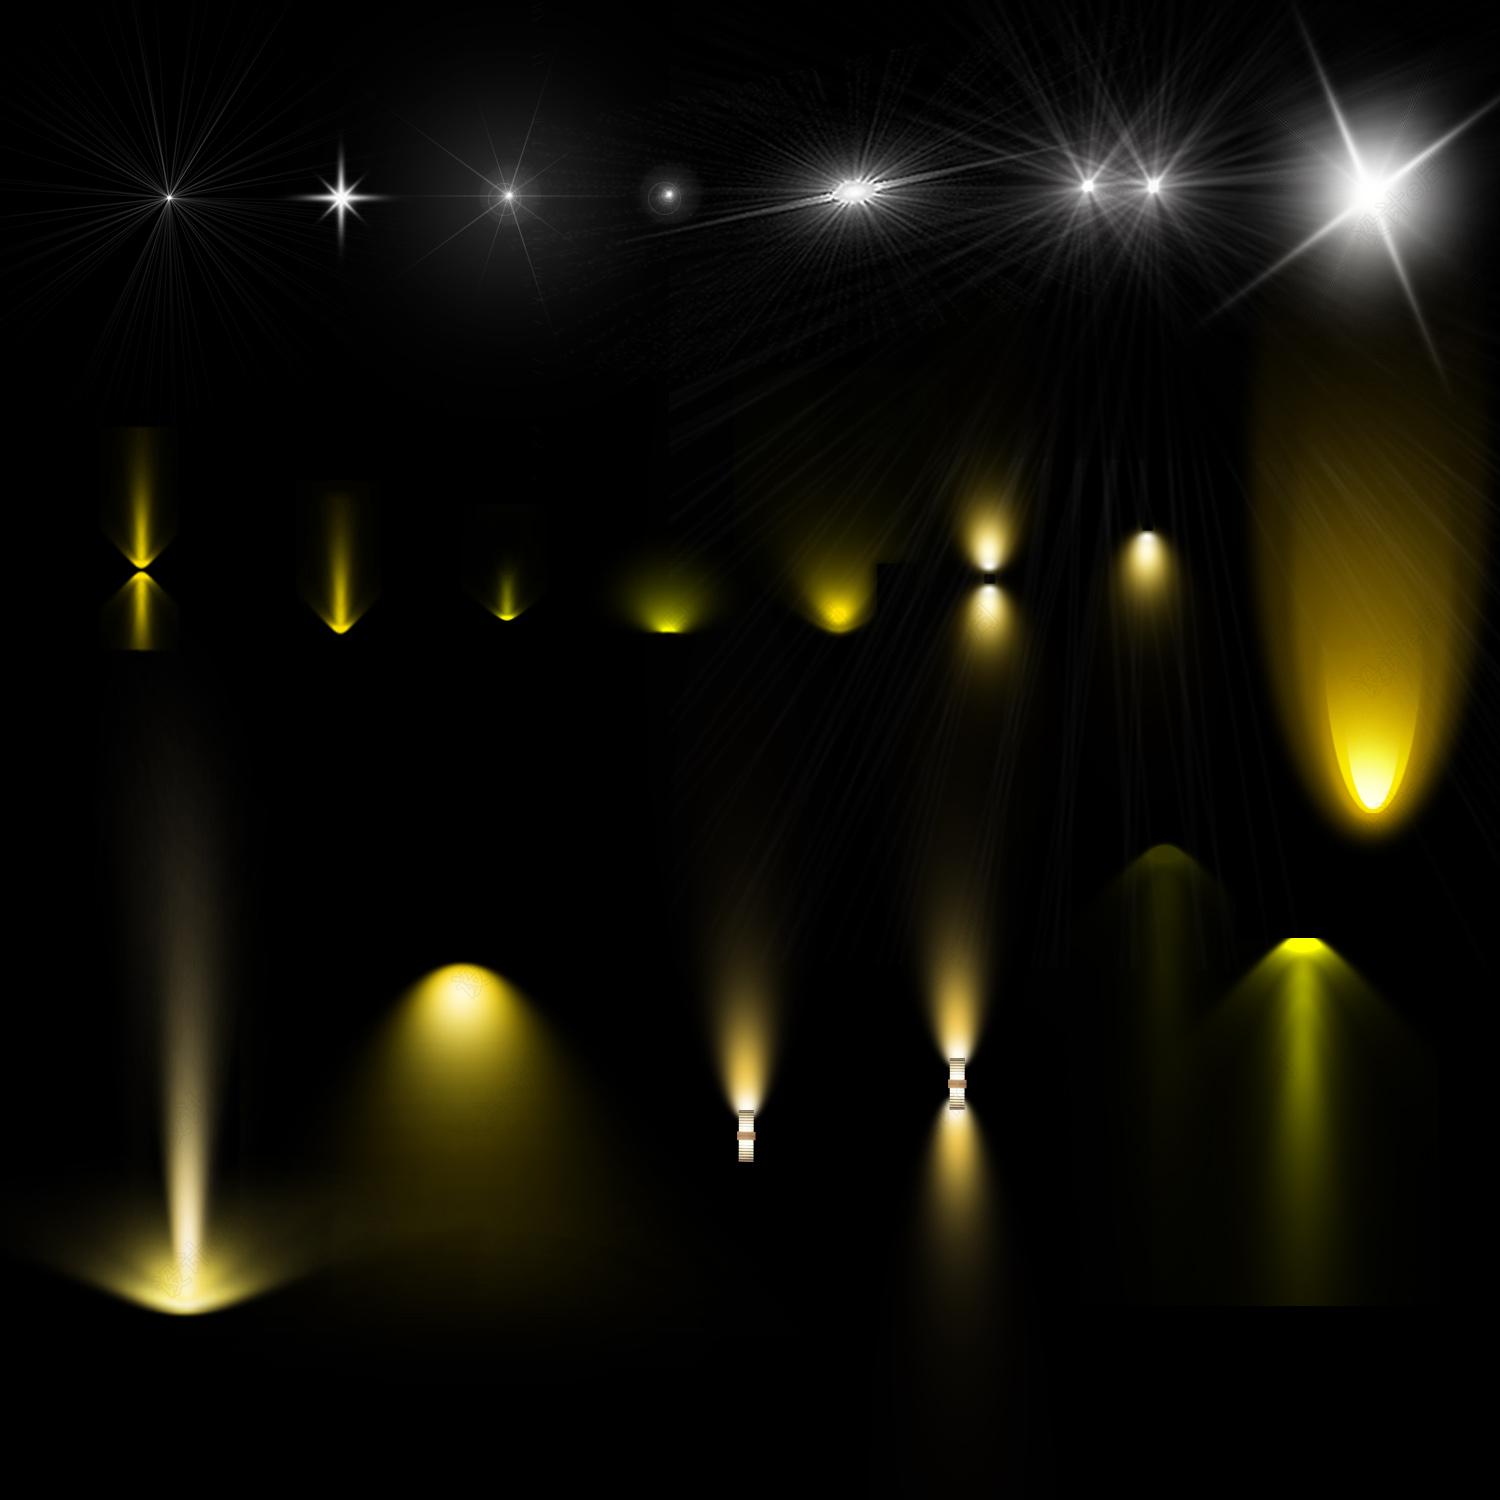 室内灯光设计软件——智能灯光篇 - 帮助中心 - 酷家乐云设计